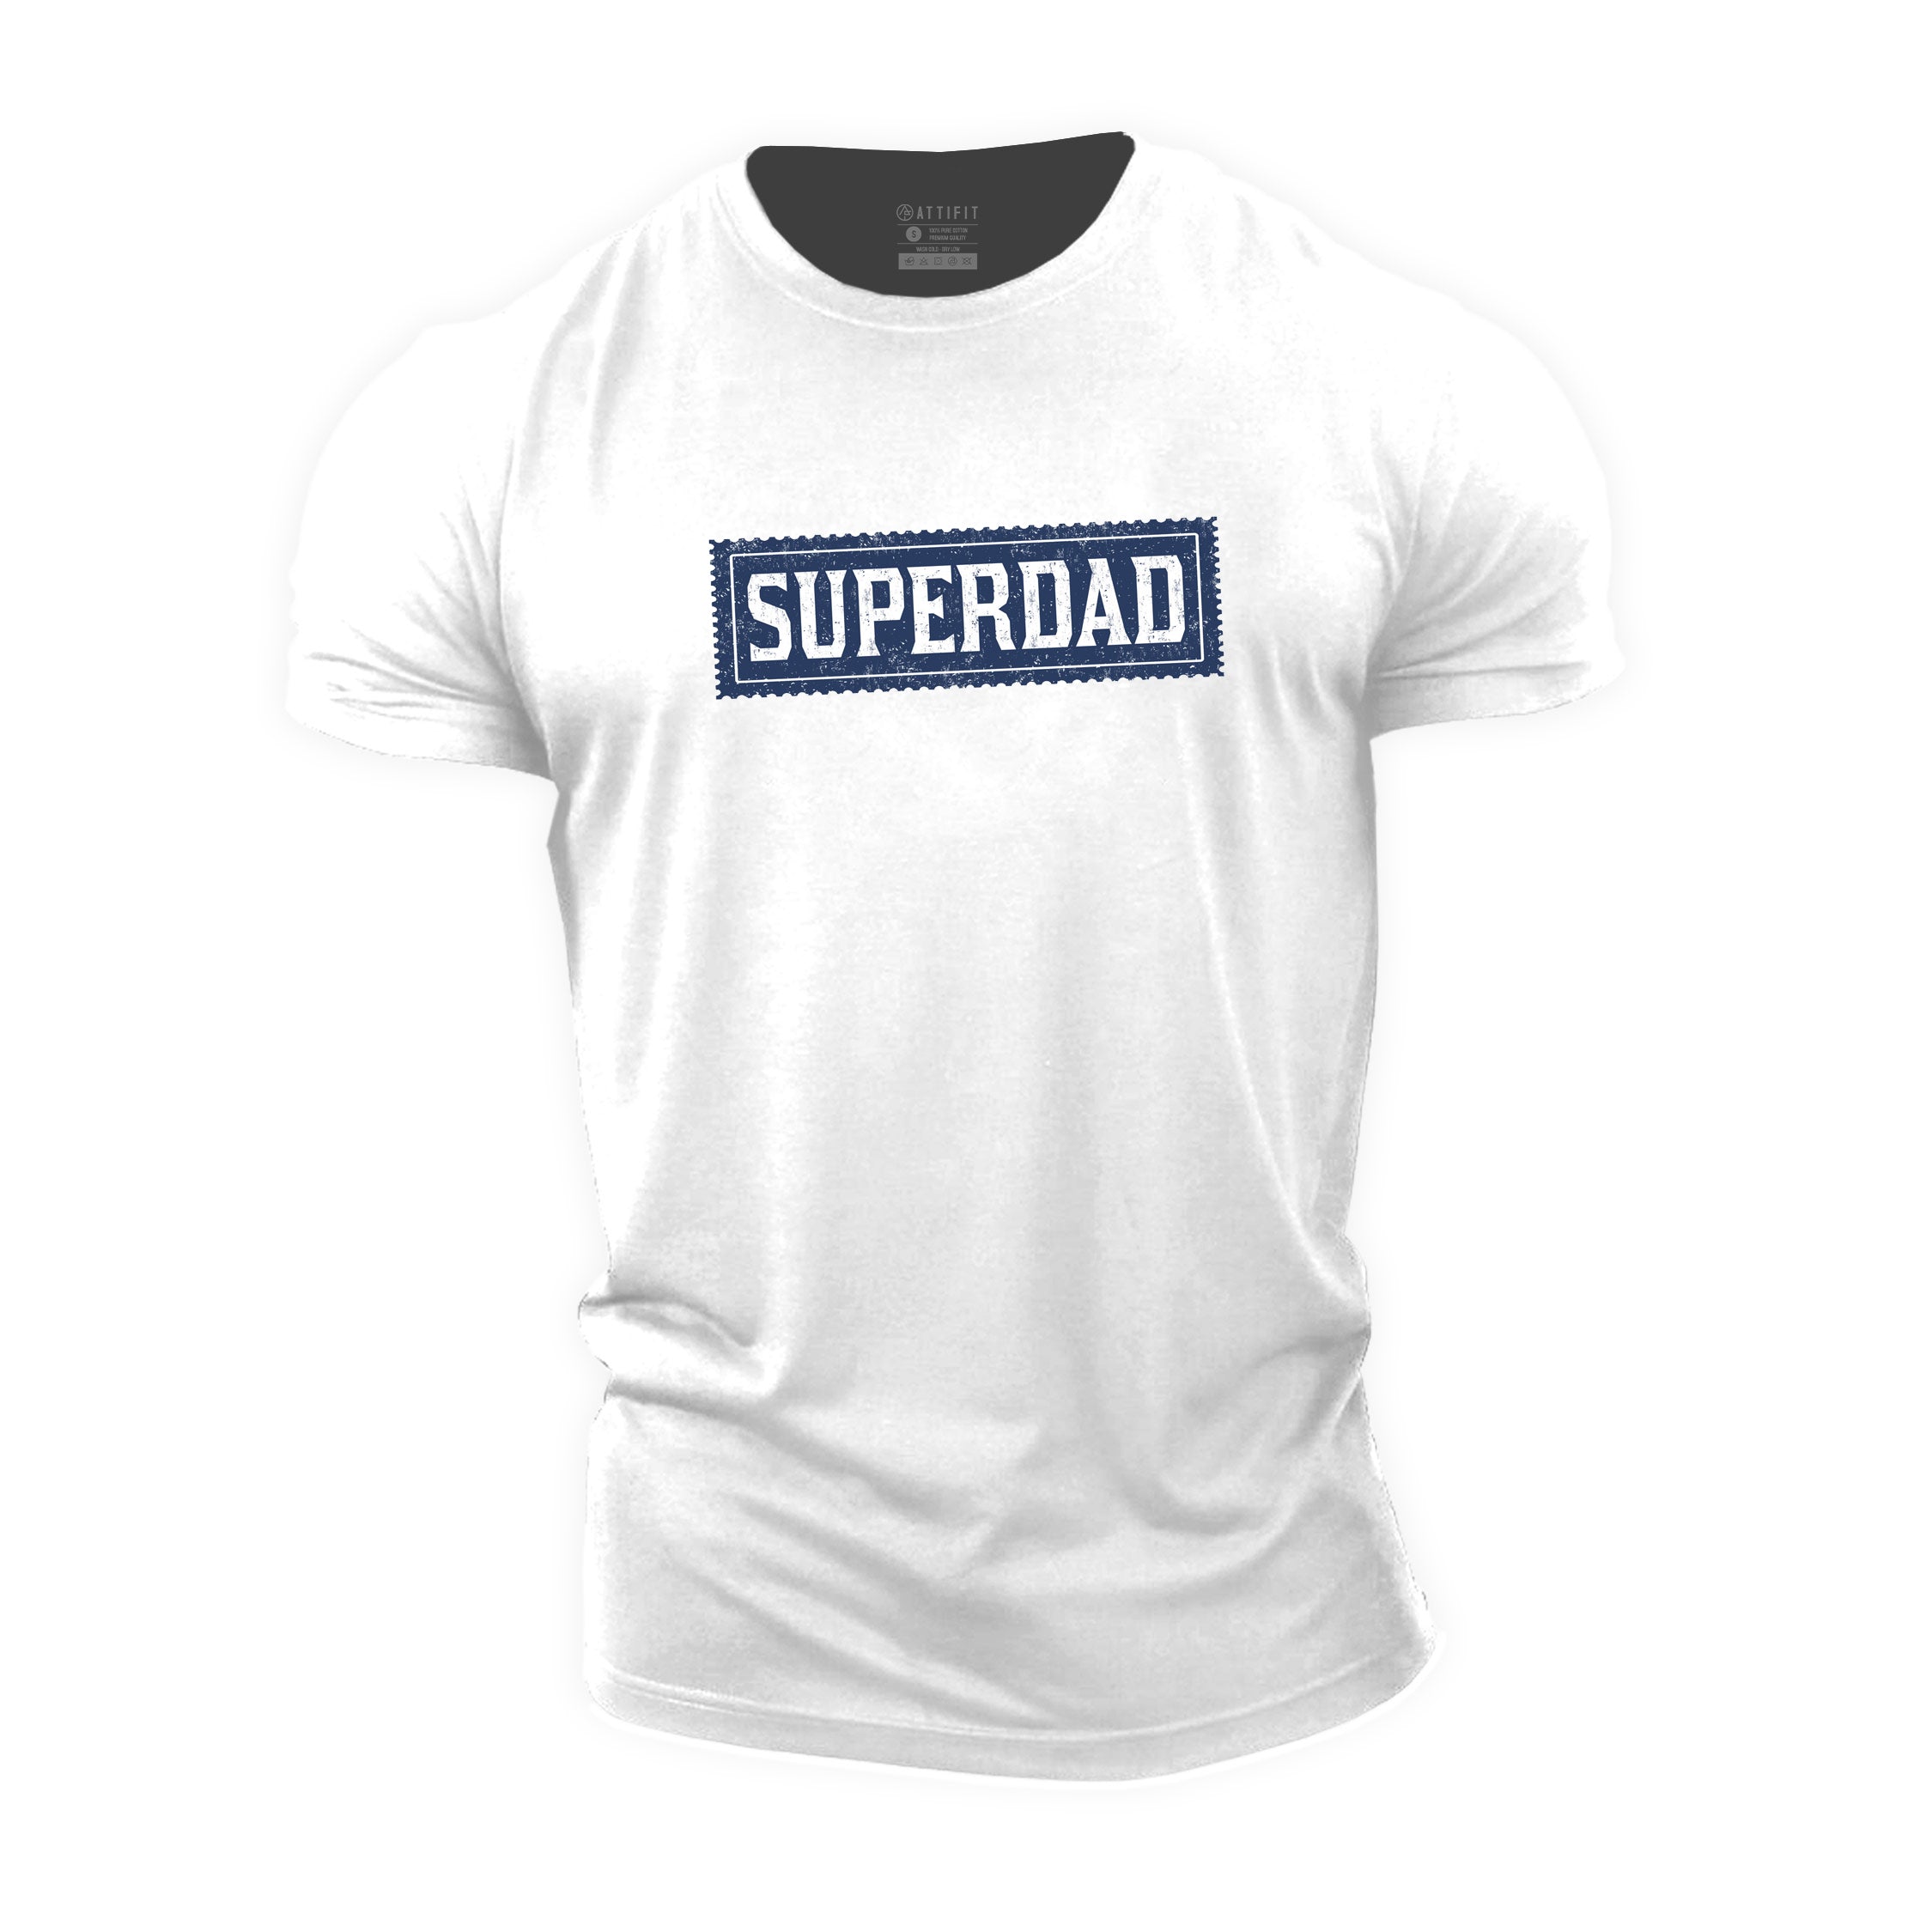 Cotton Superdad T-shirt